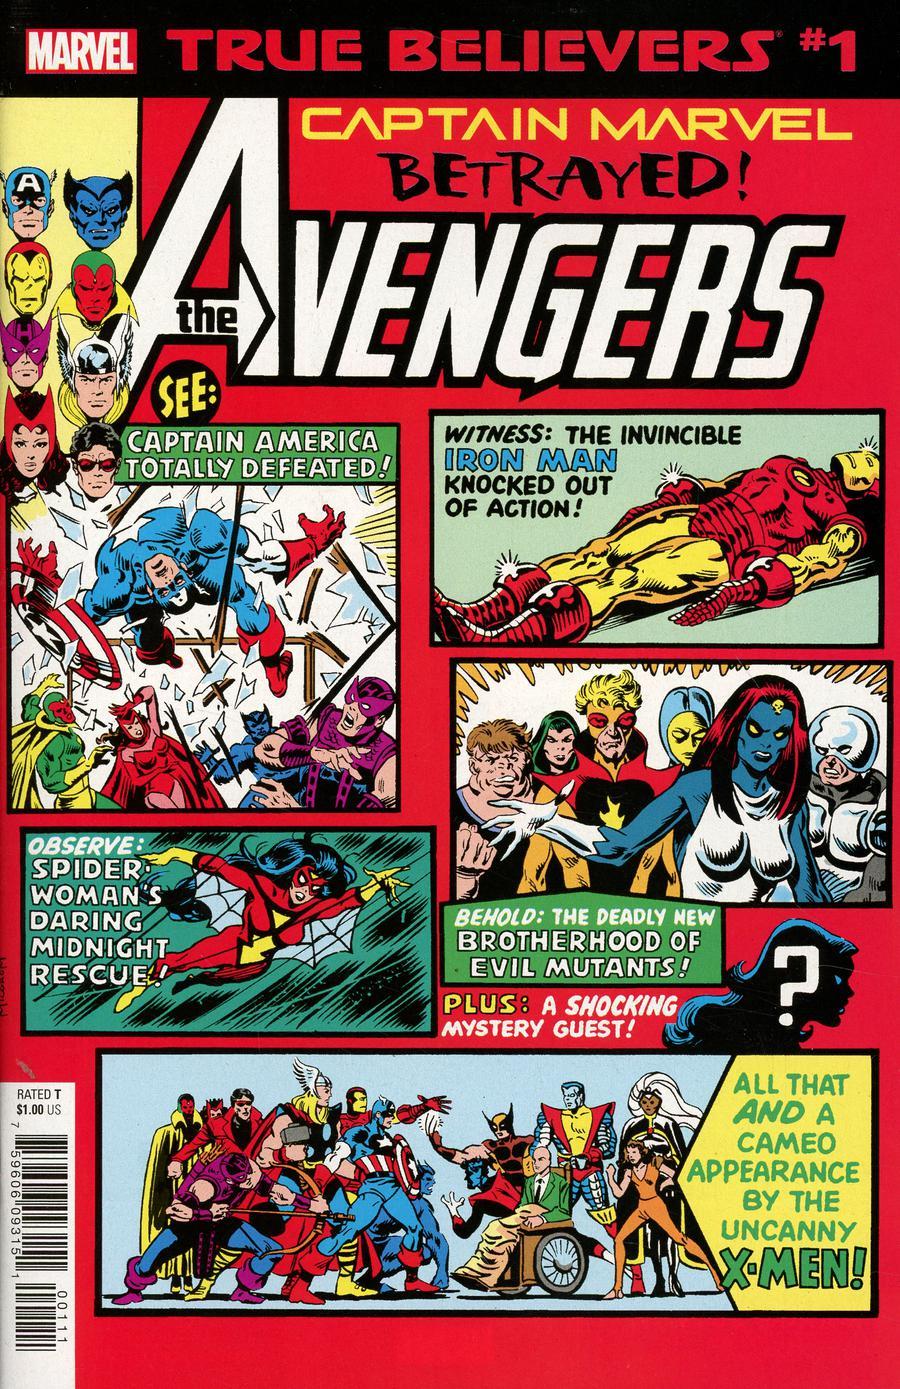 True Believers Captain Marvel Betrayed Vol. 1 #1